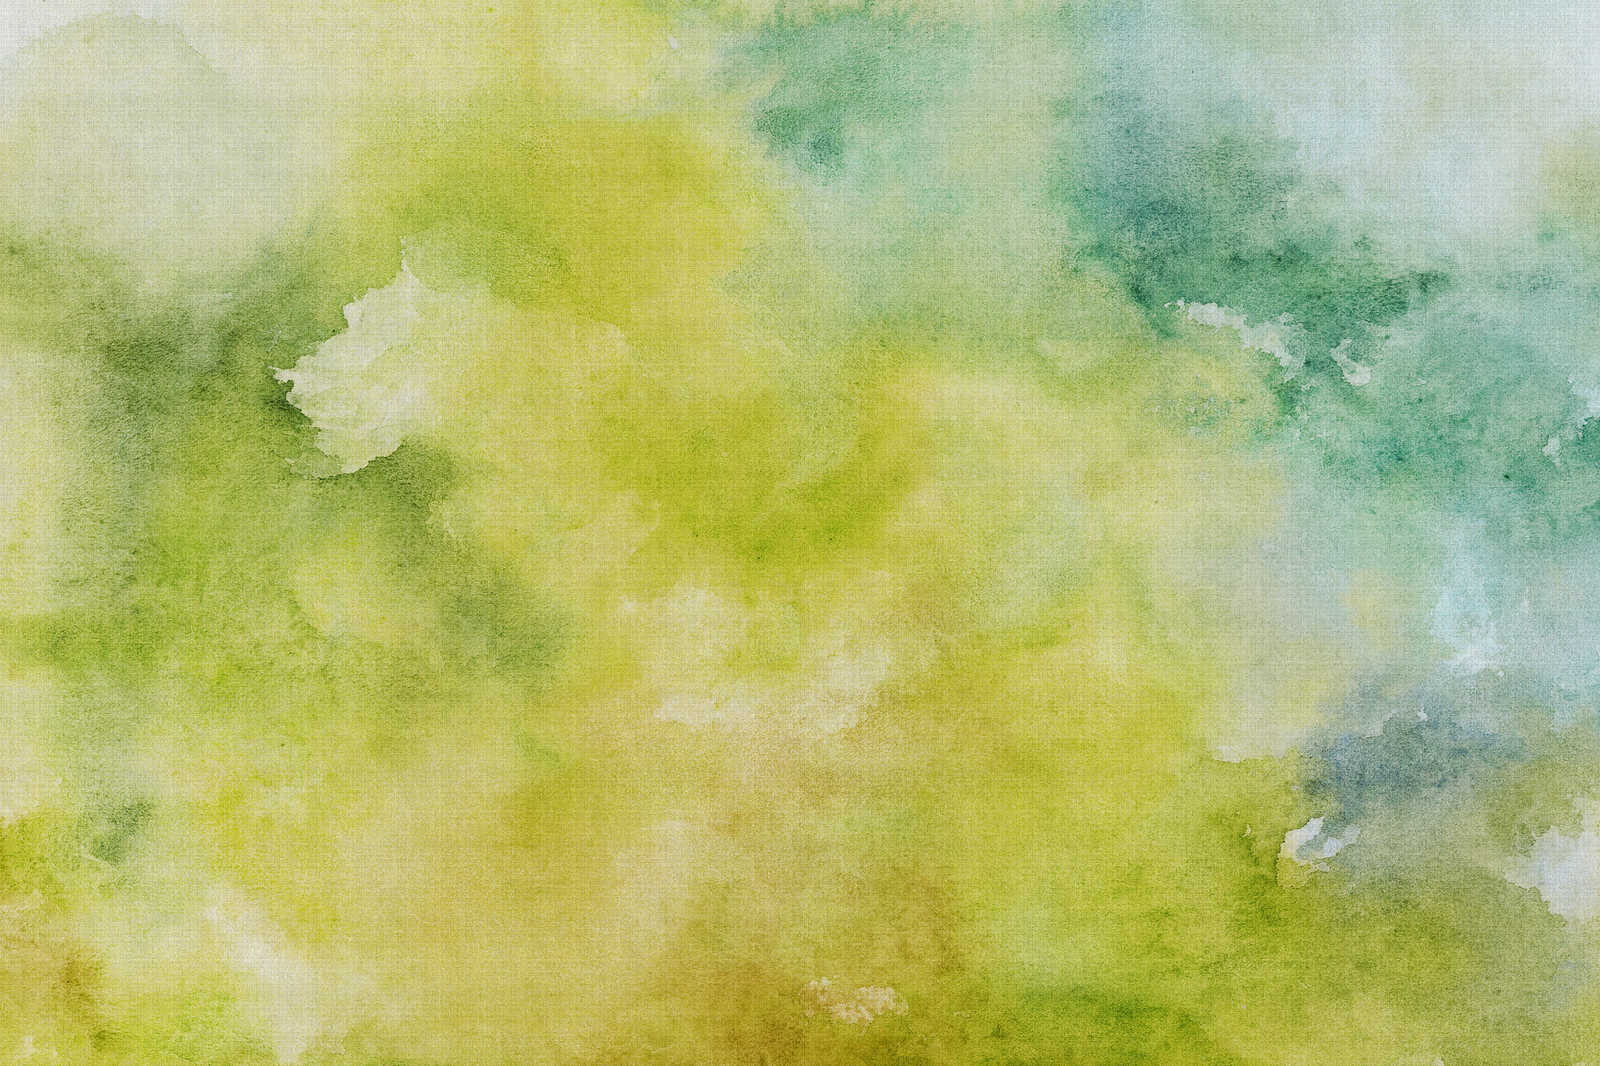             Watercolours 3 - Motif vert aquarelle sur toile aspect lin naturel - 0,90 m x 0,60 m
        